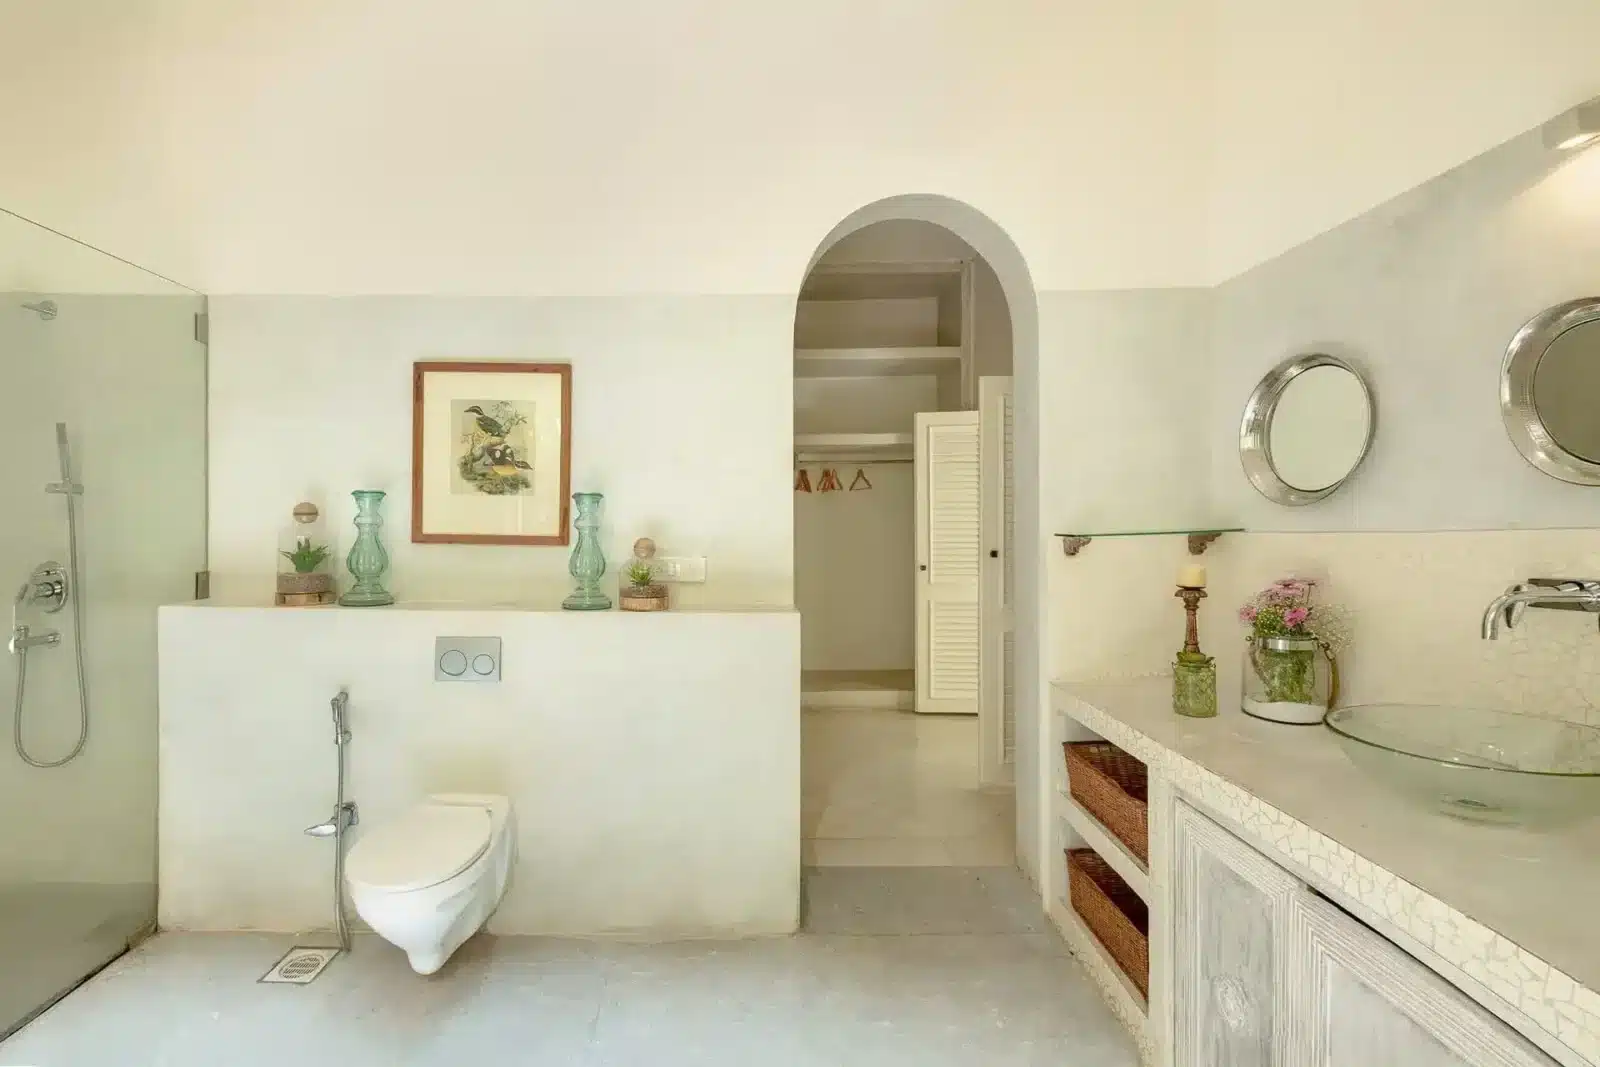 Villa Branco - Premium Villas for Sale in Goa - Stunning Wash Room